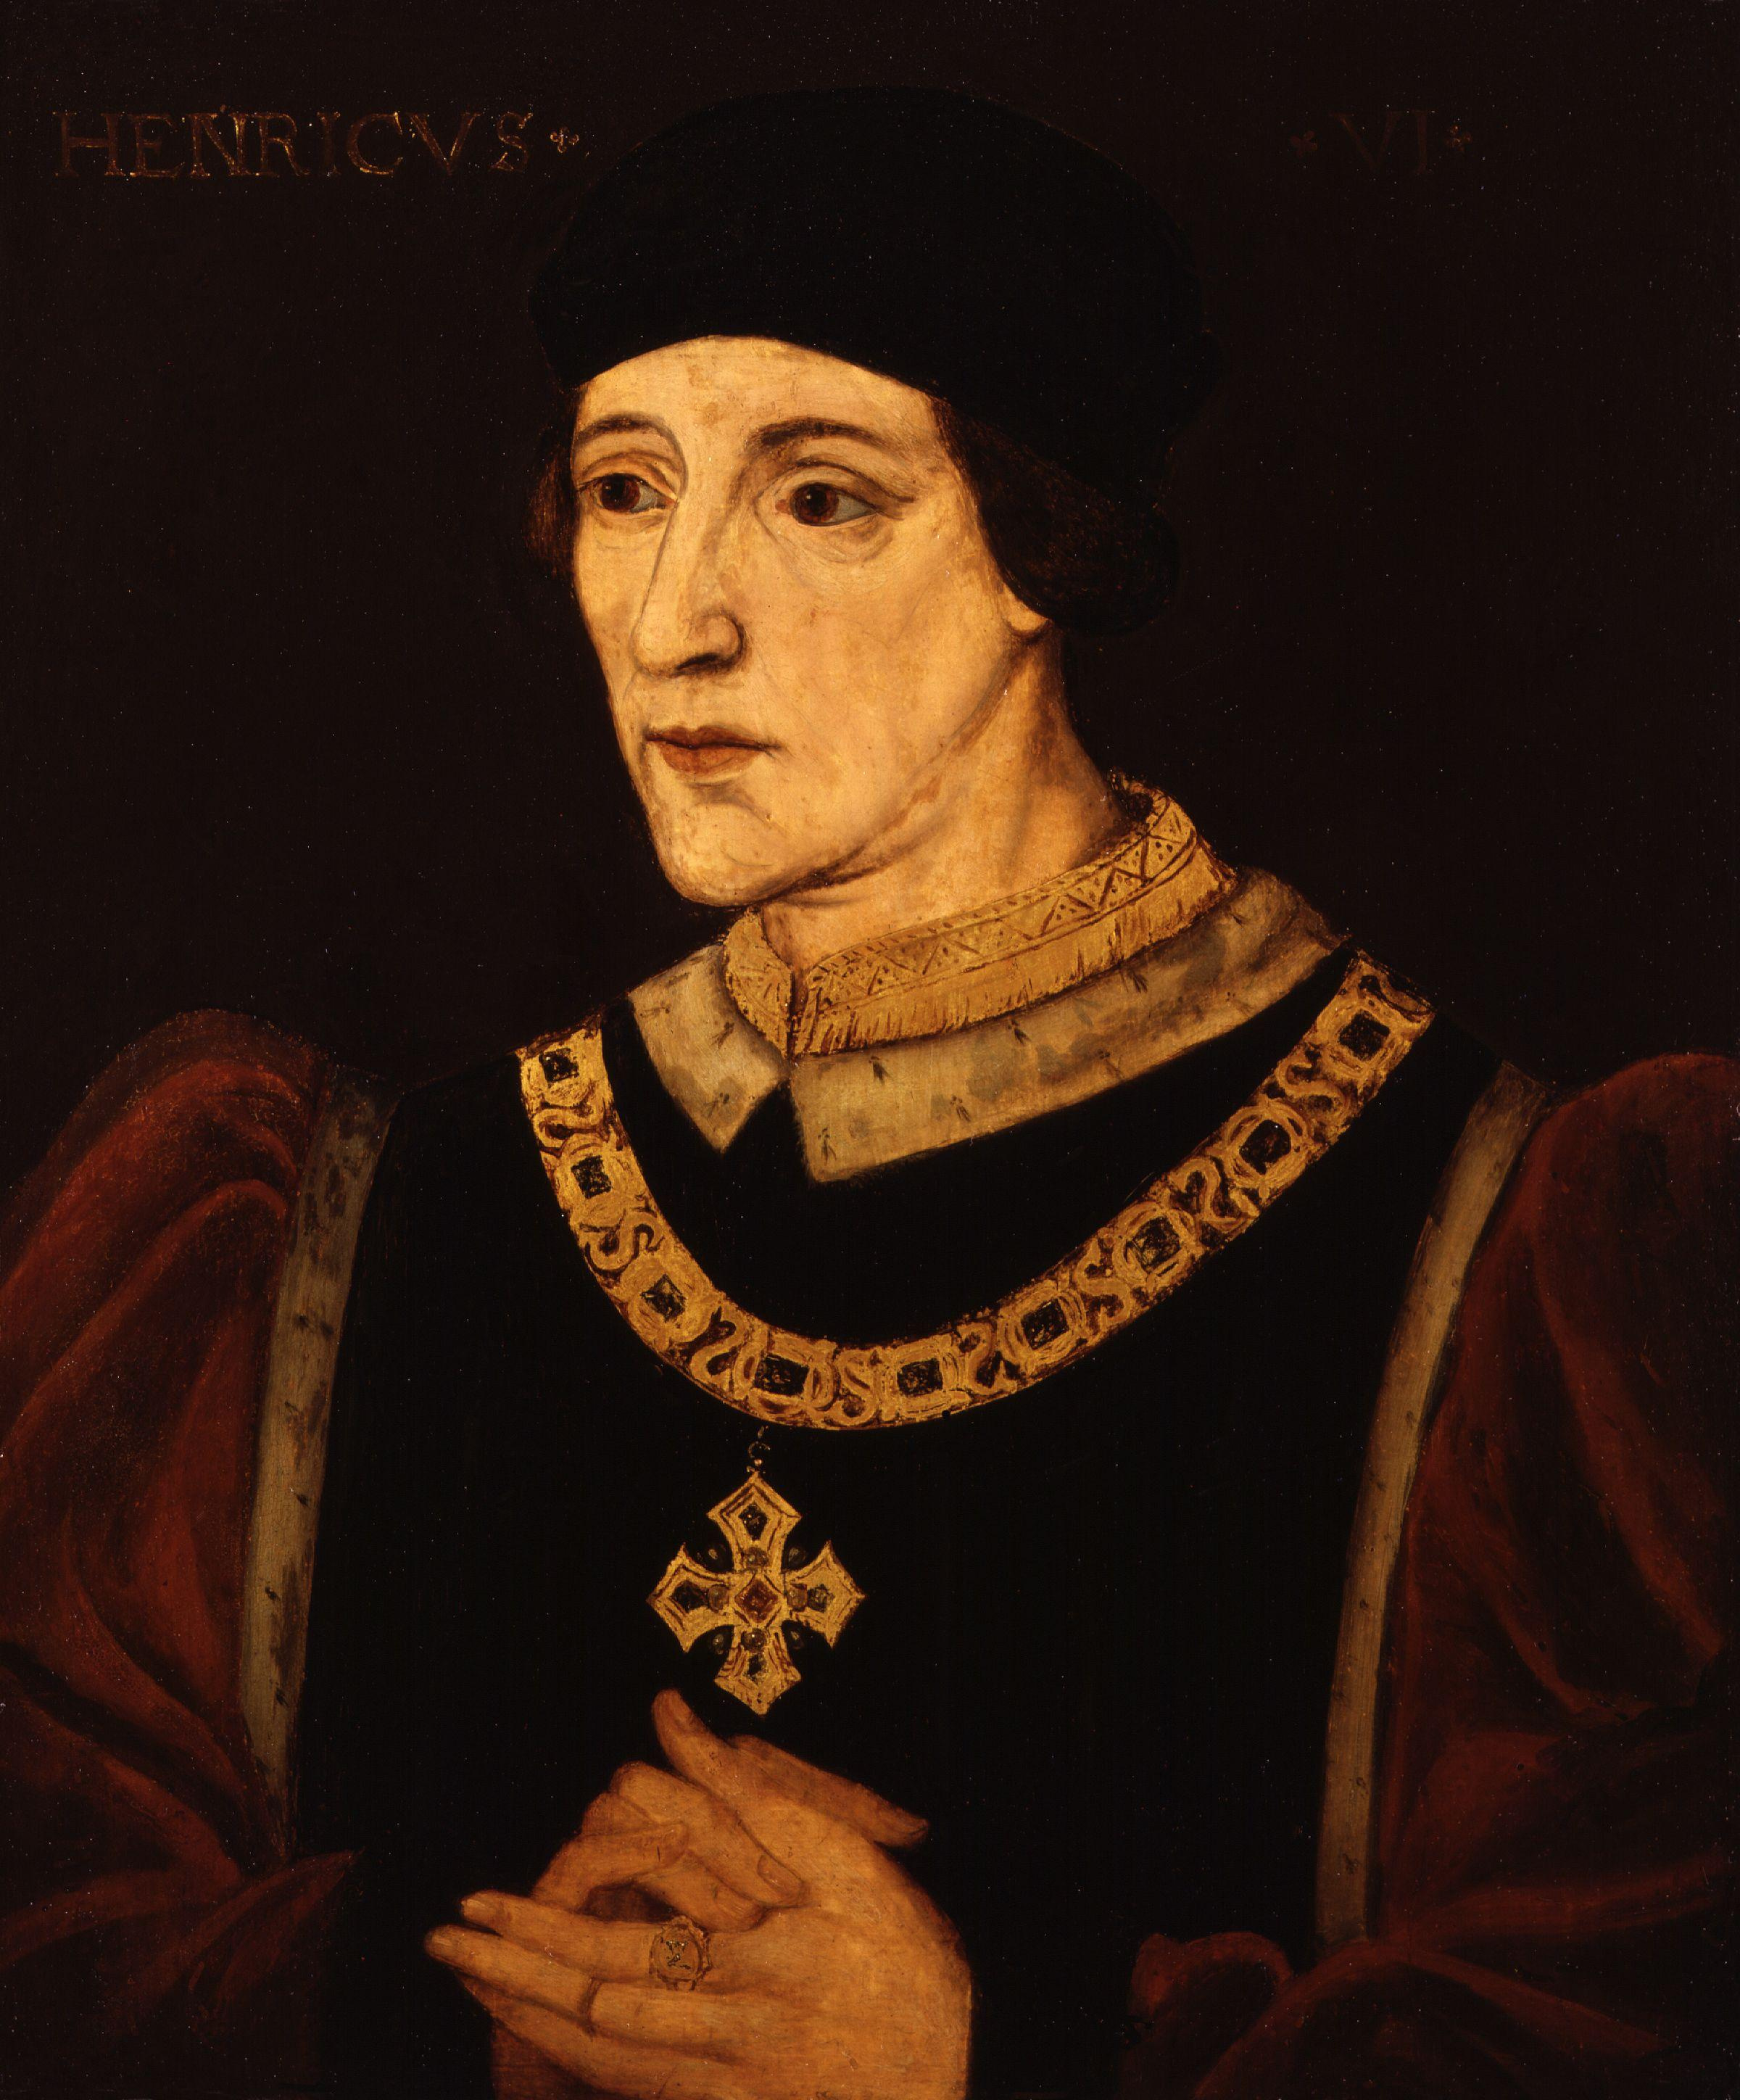 V. Henriknek a véltnél jóval kisebb flottája volt az agincourt-i ütközetben